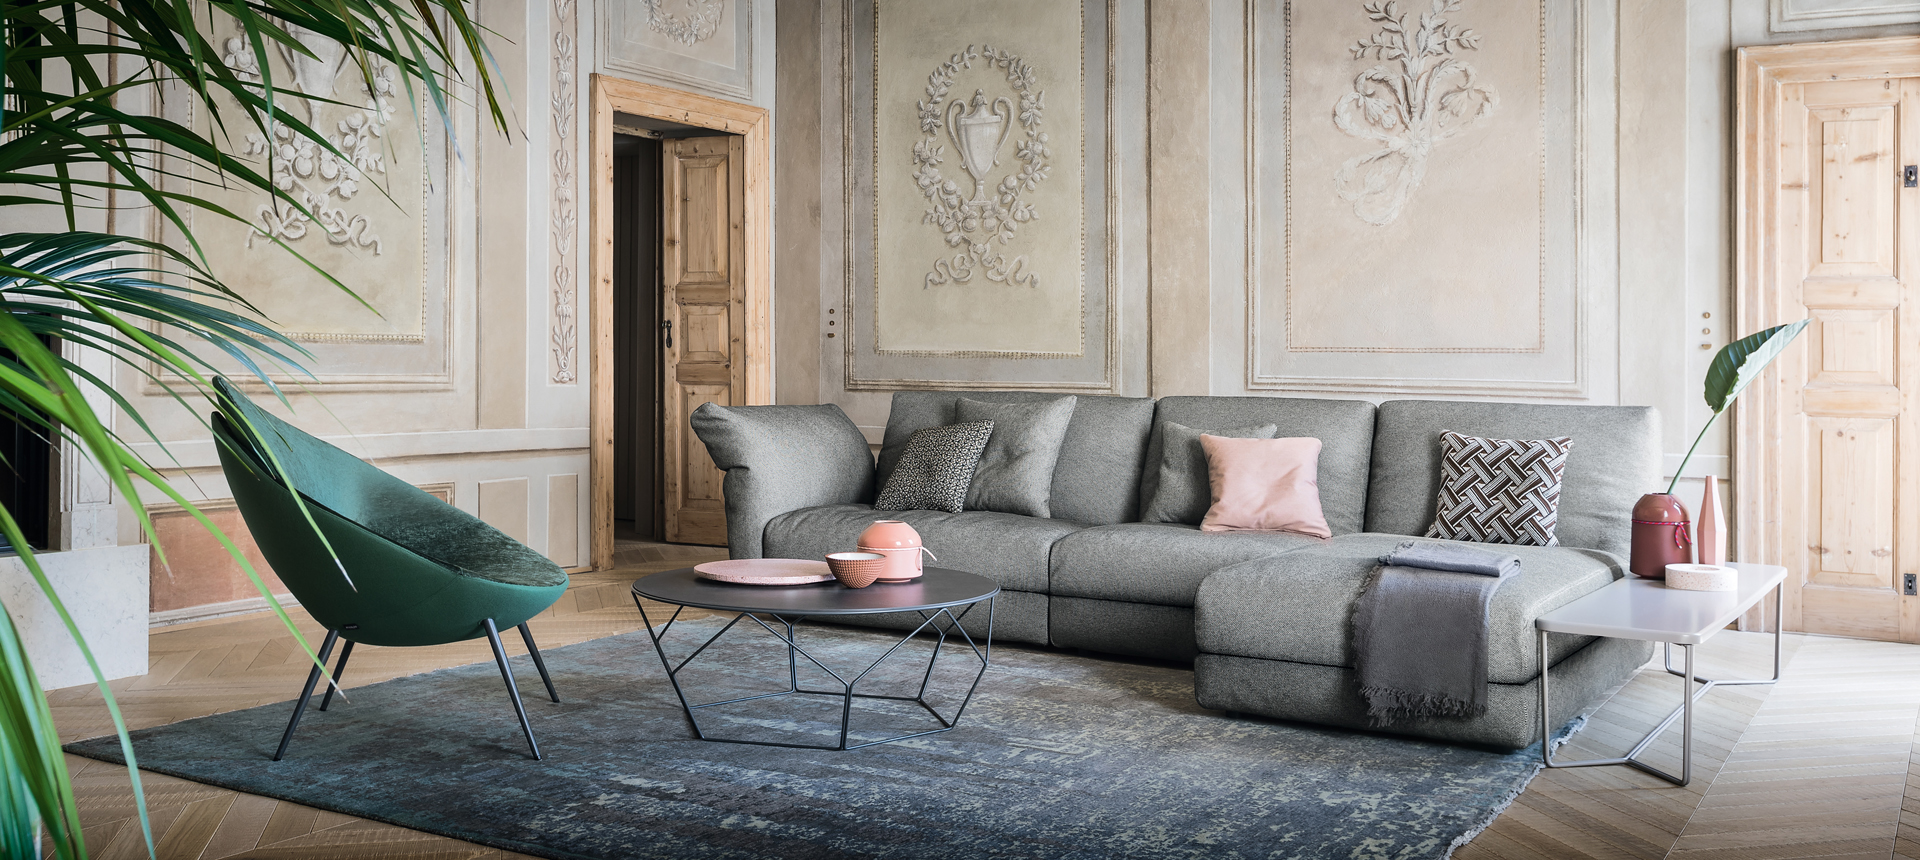 designer living room furniture sale